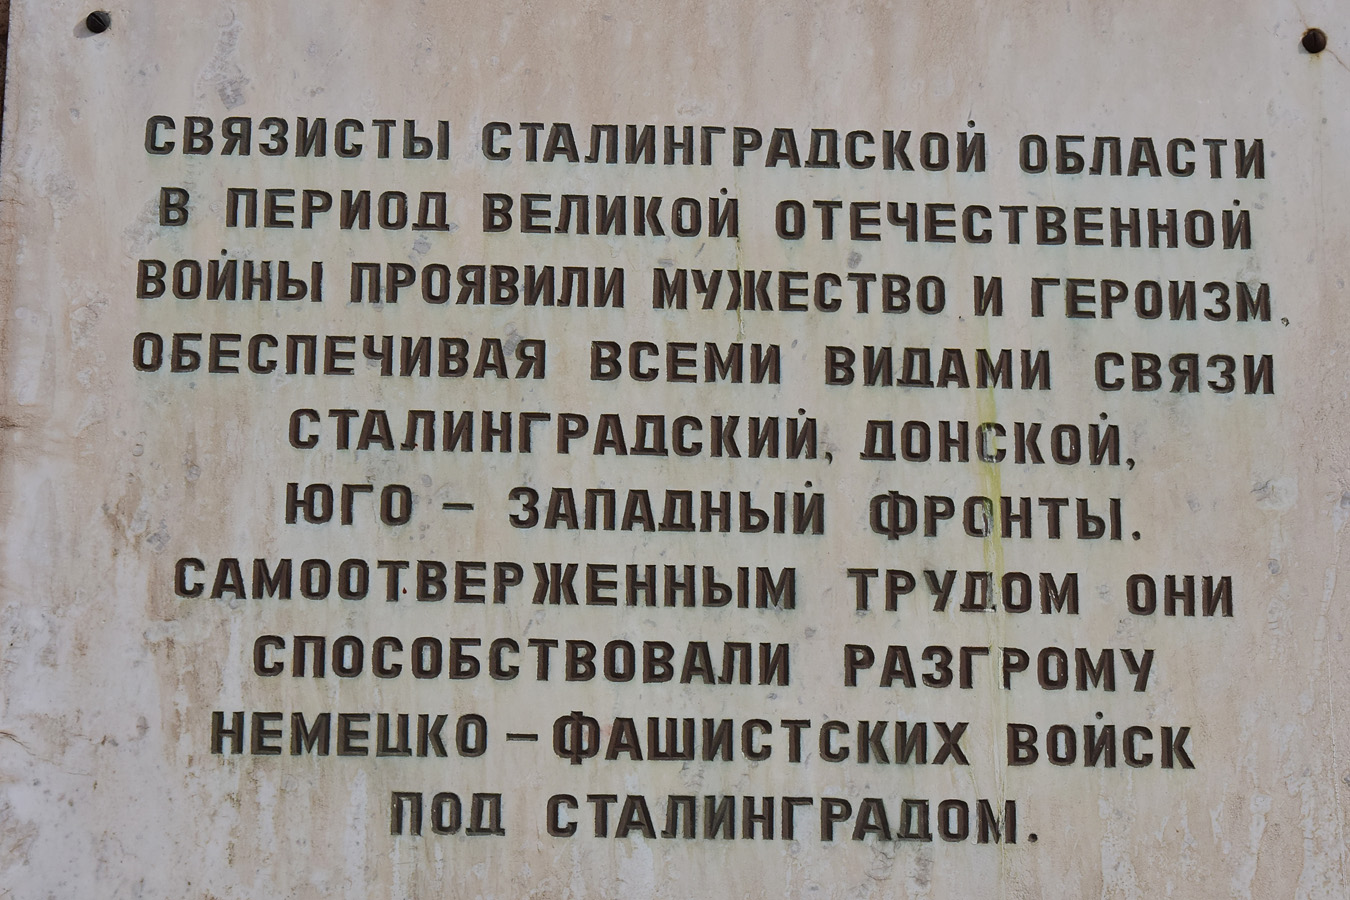 Wolgograd, Улица Мира, 9. Wolgograd — Memorial plaques